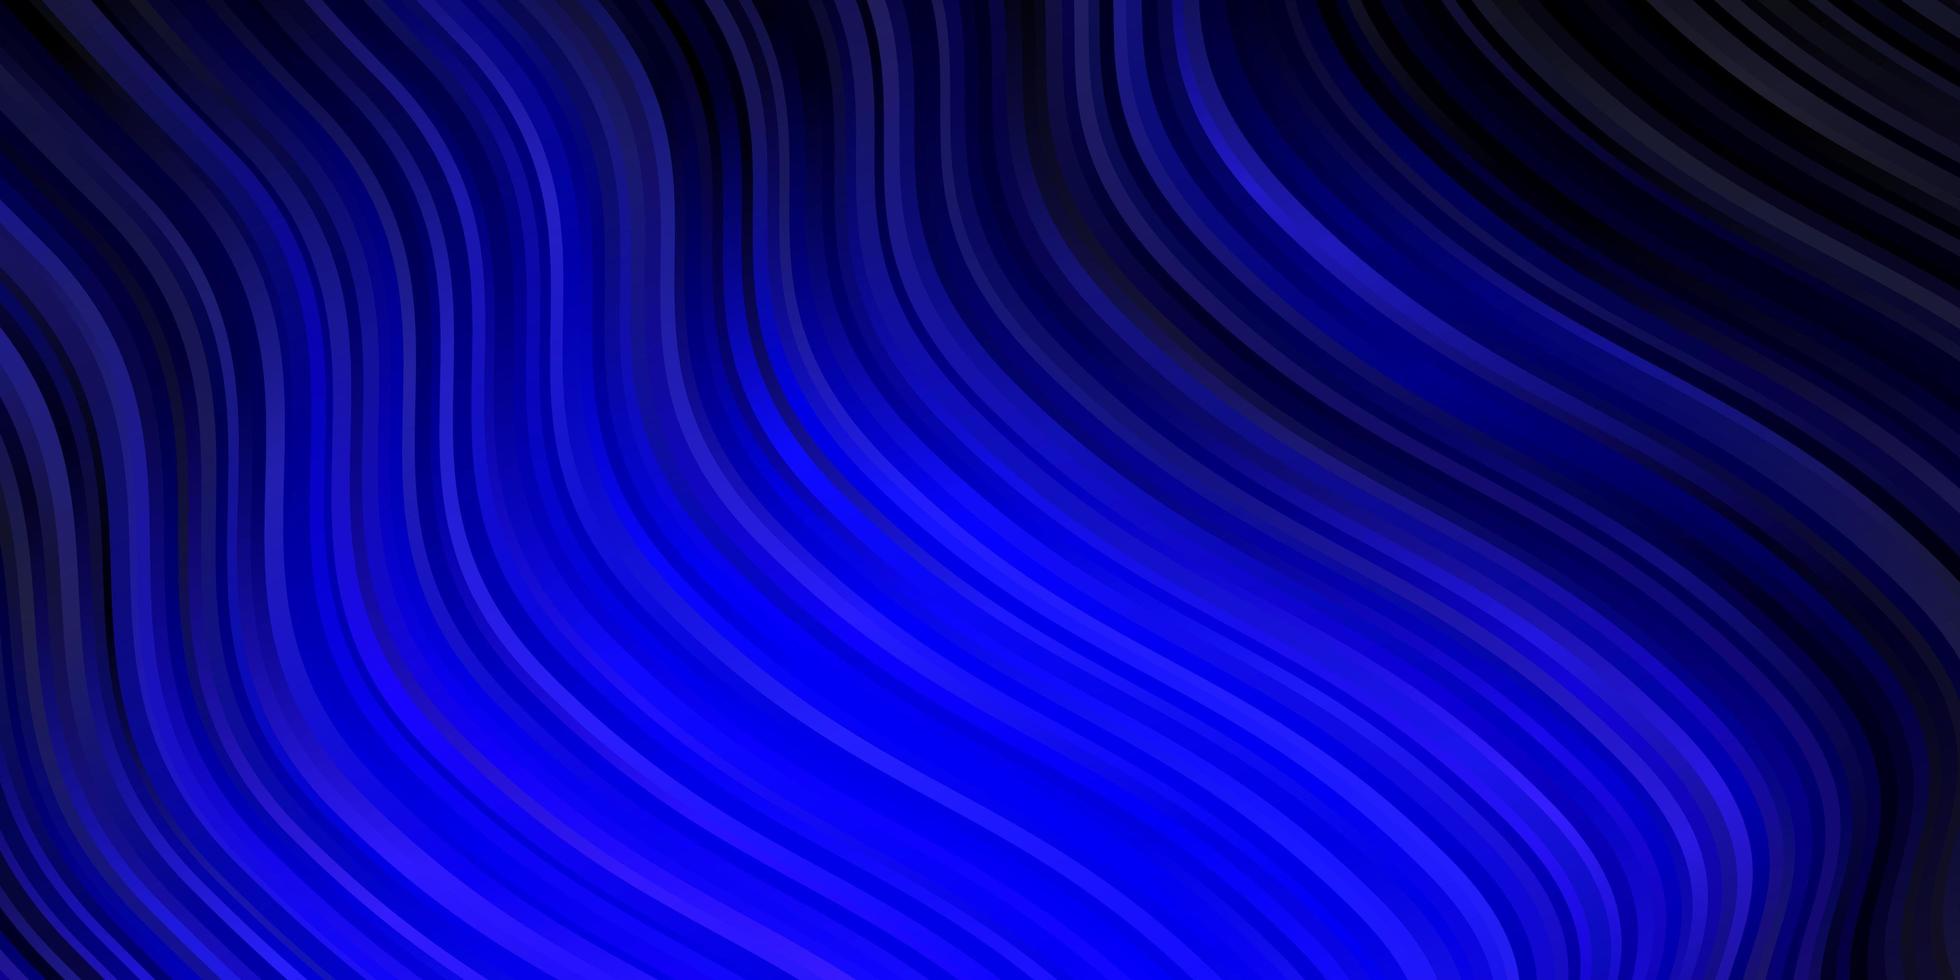 struttura vettoriale blu scuro con curve.